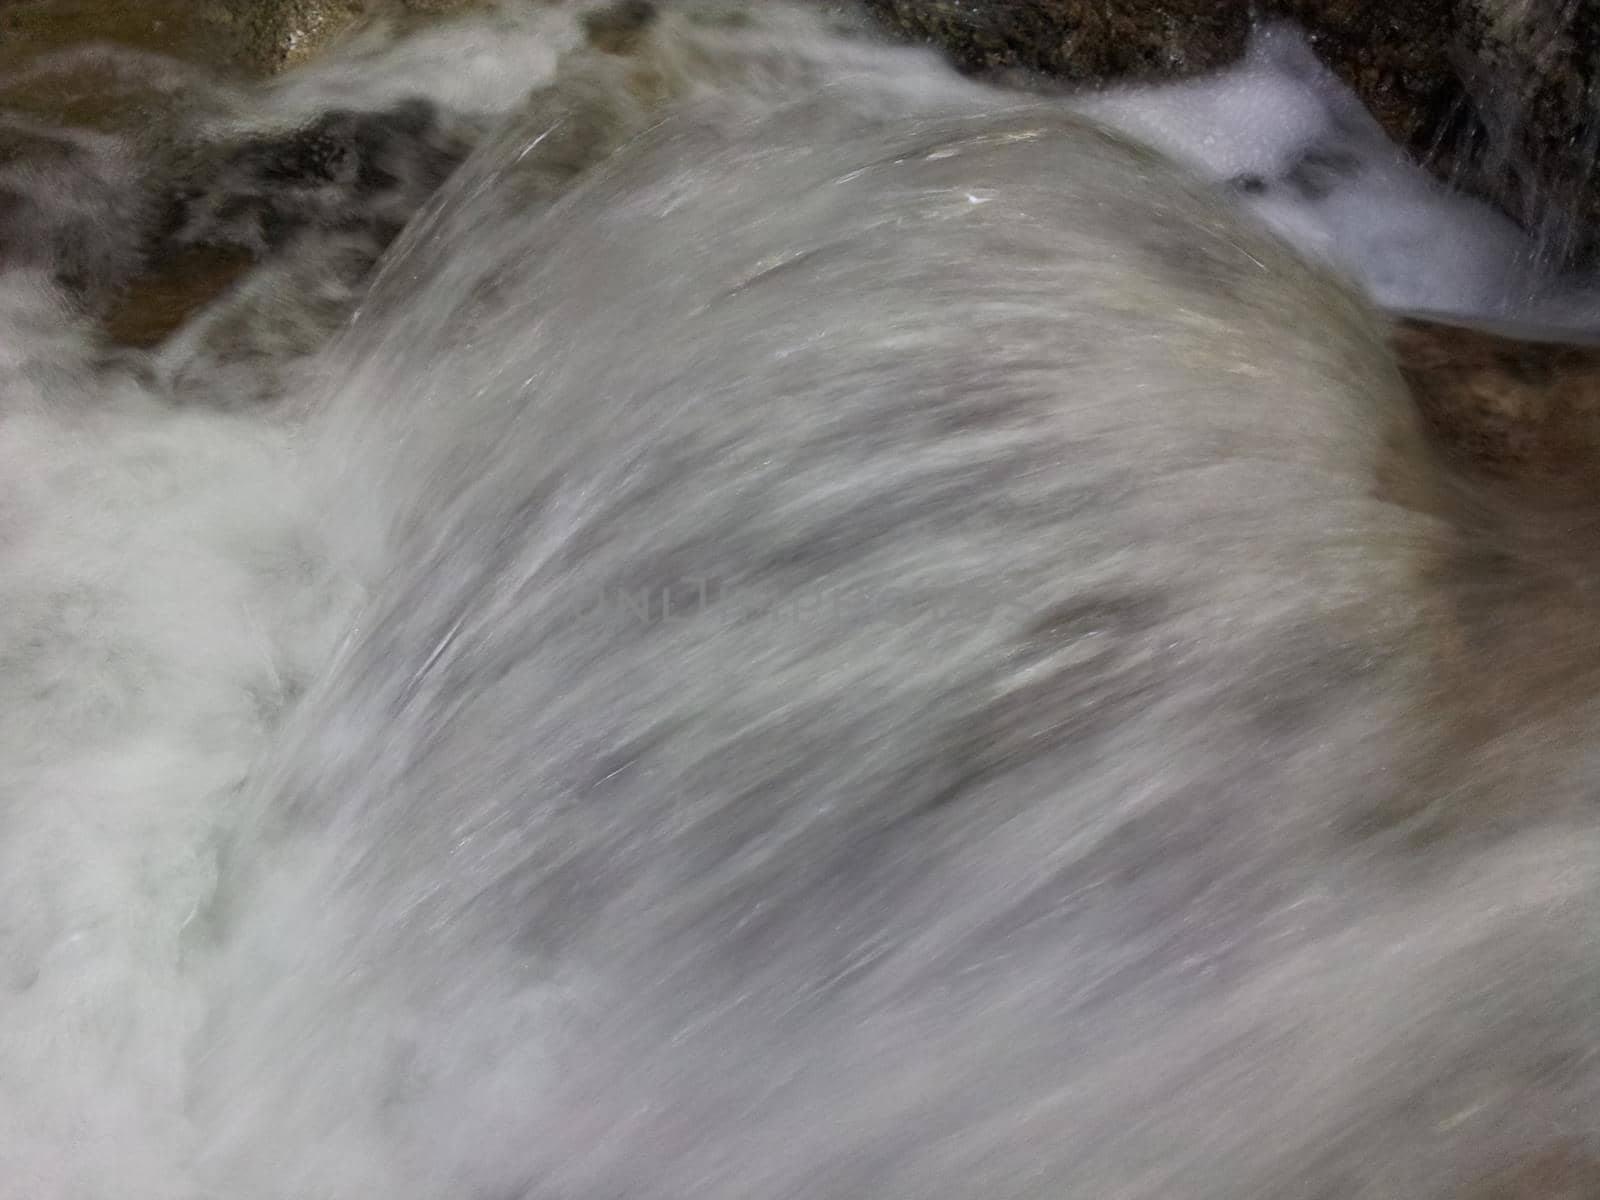 Blurred or unfocused view of flowing water stream in between stones by Photochowk